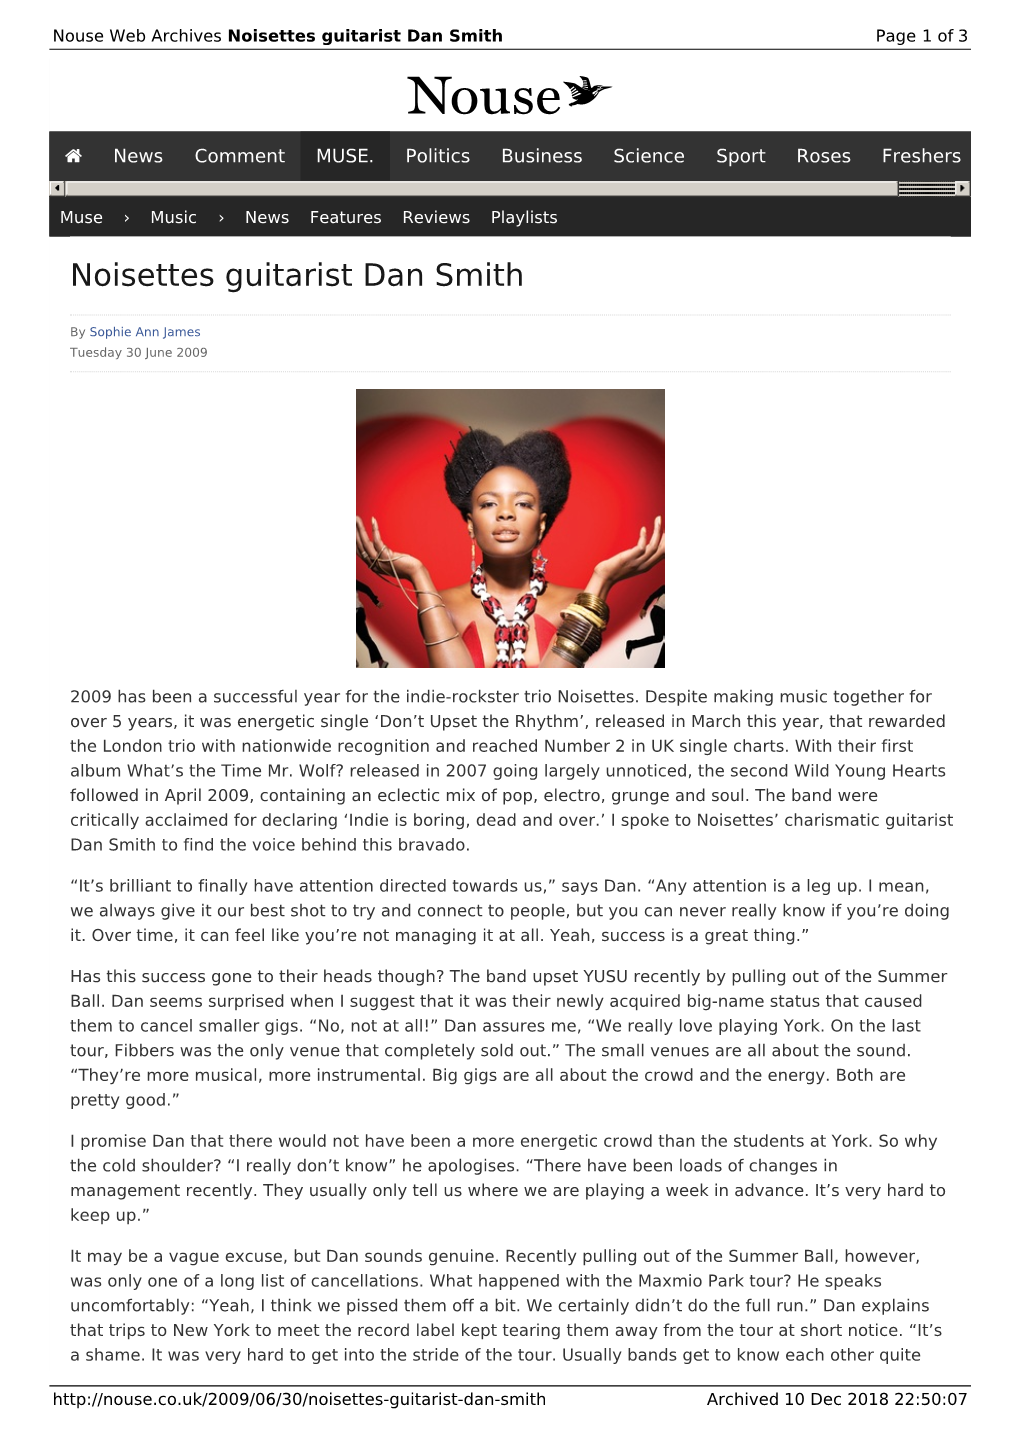 Noisettes Guitarist Dan Smith | Nouse